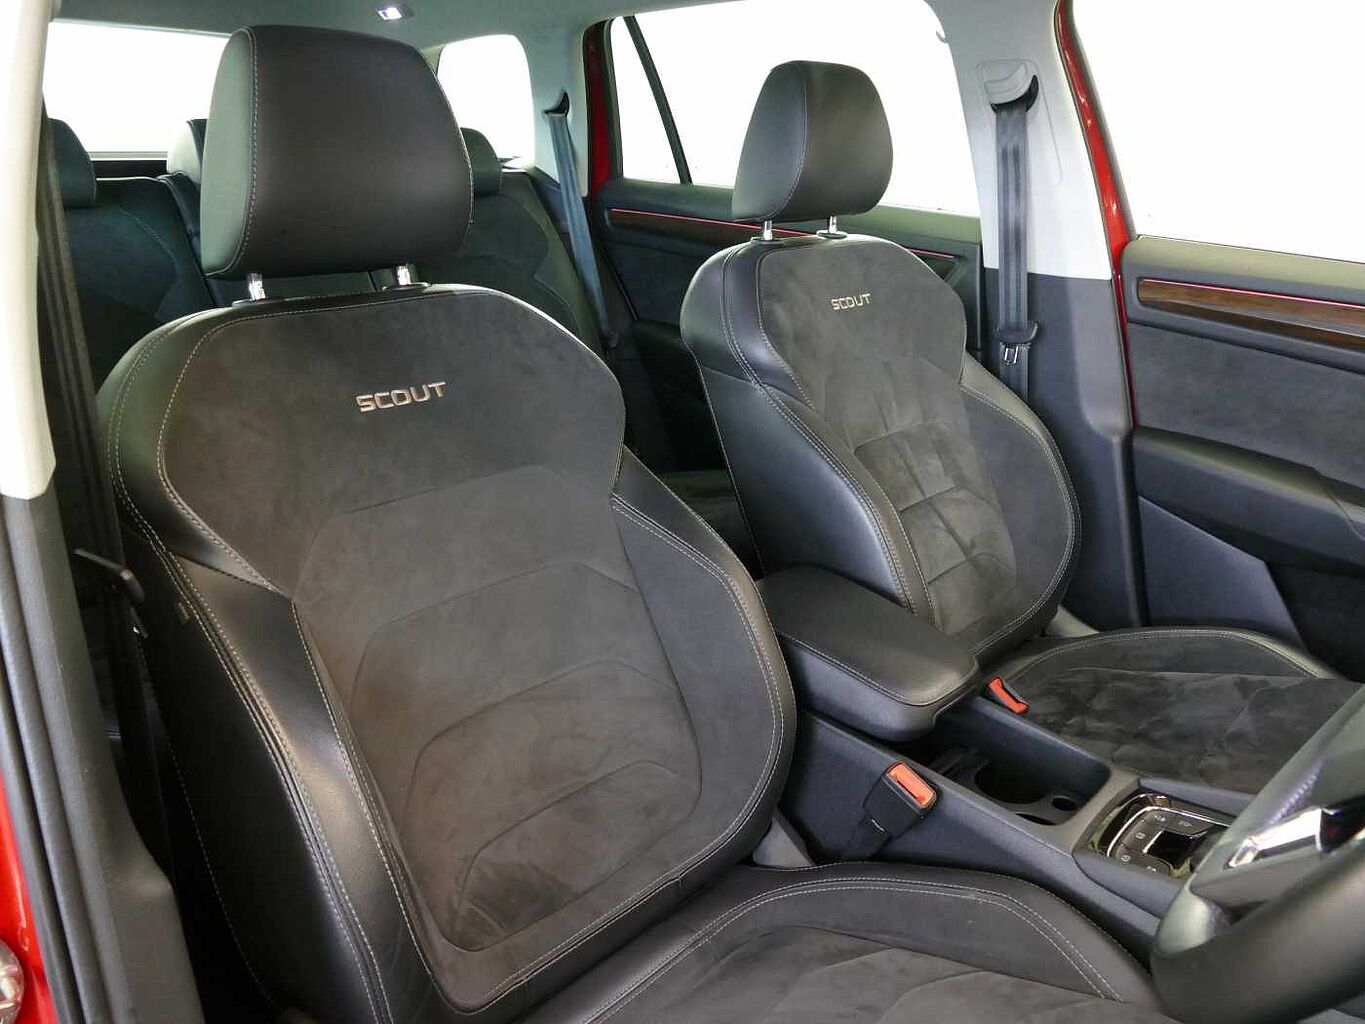 SKODA Kodiaq 2.0 TSI (190ps) 4X4 Scout (7 seats) DSG SUV